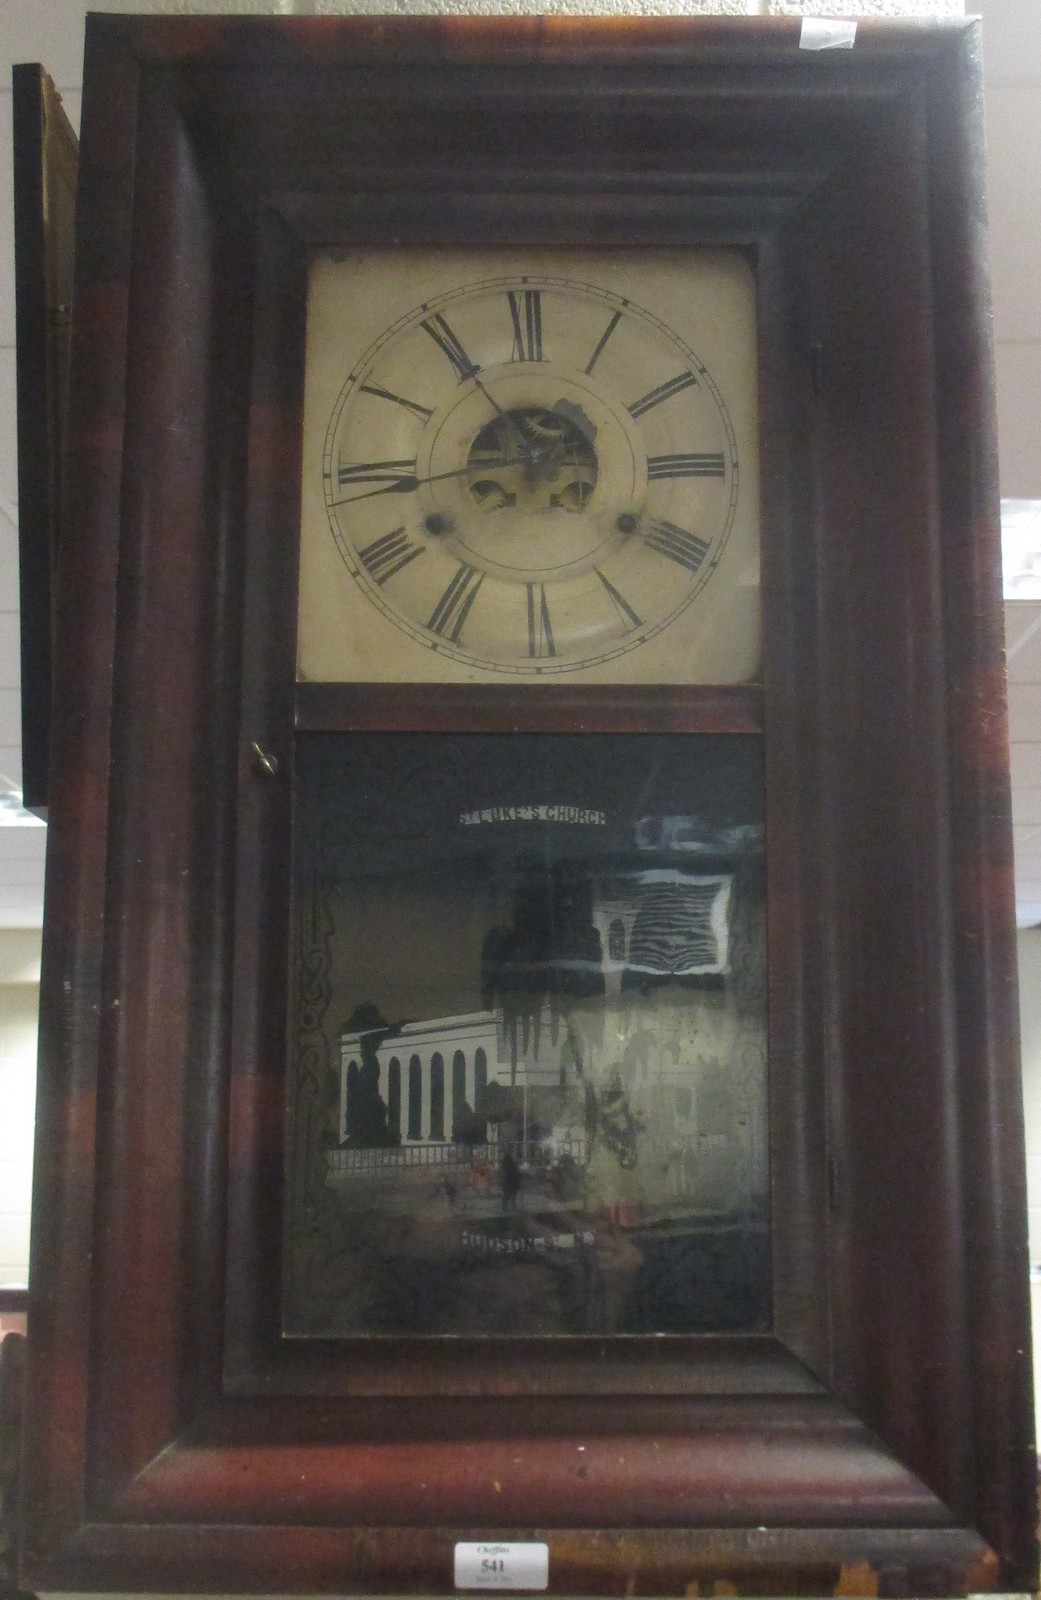 An American shelf clock